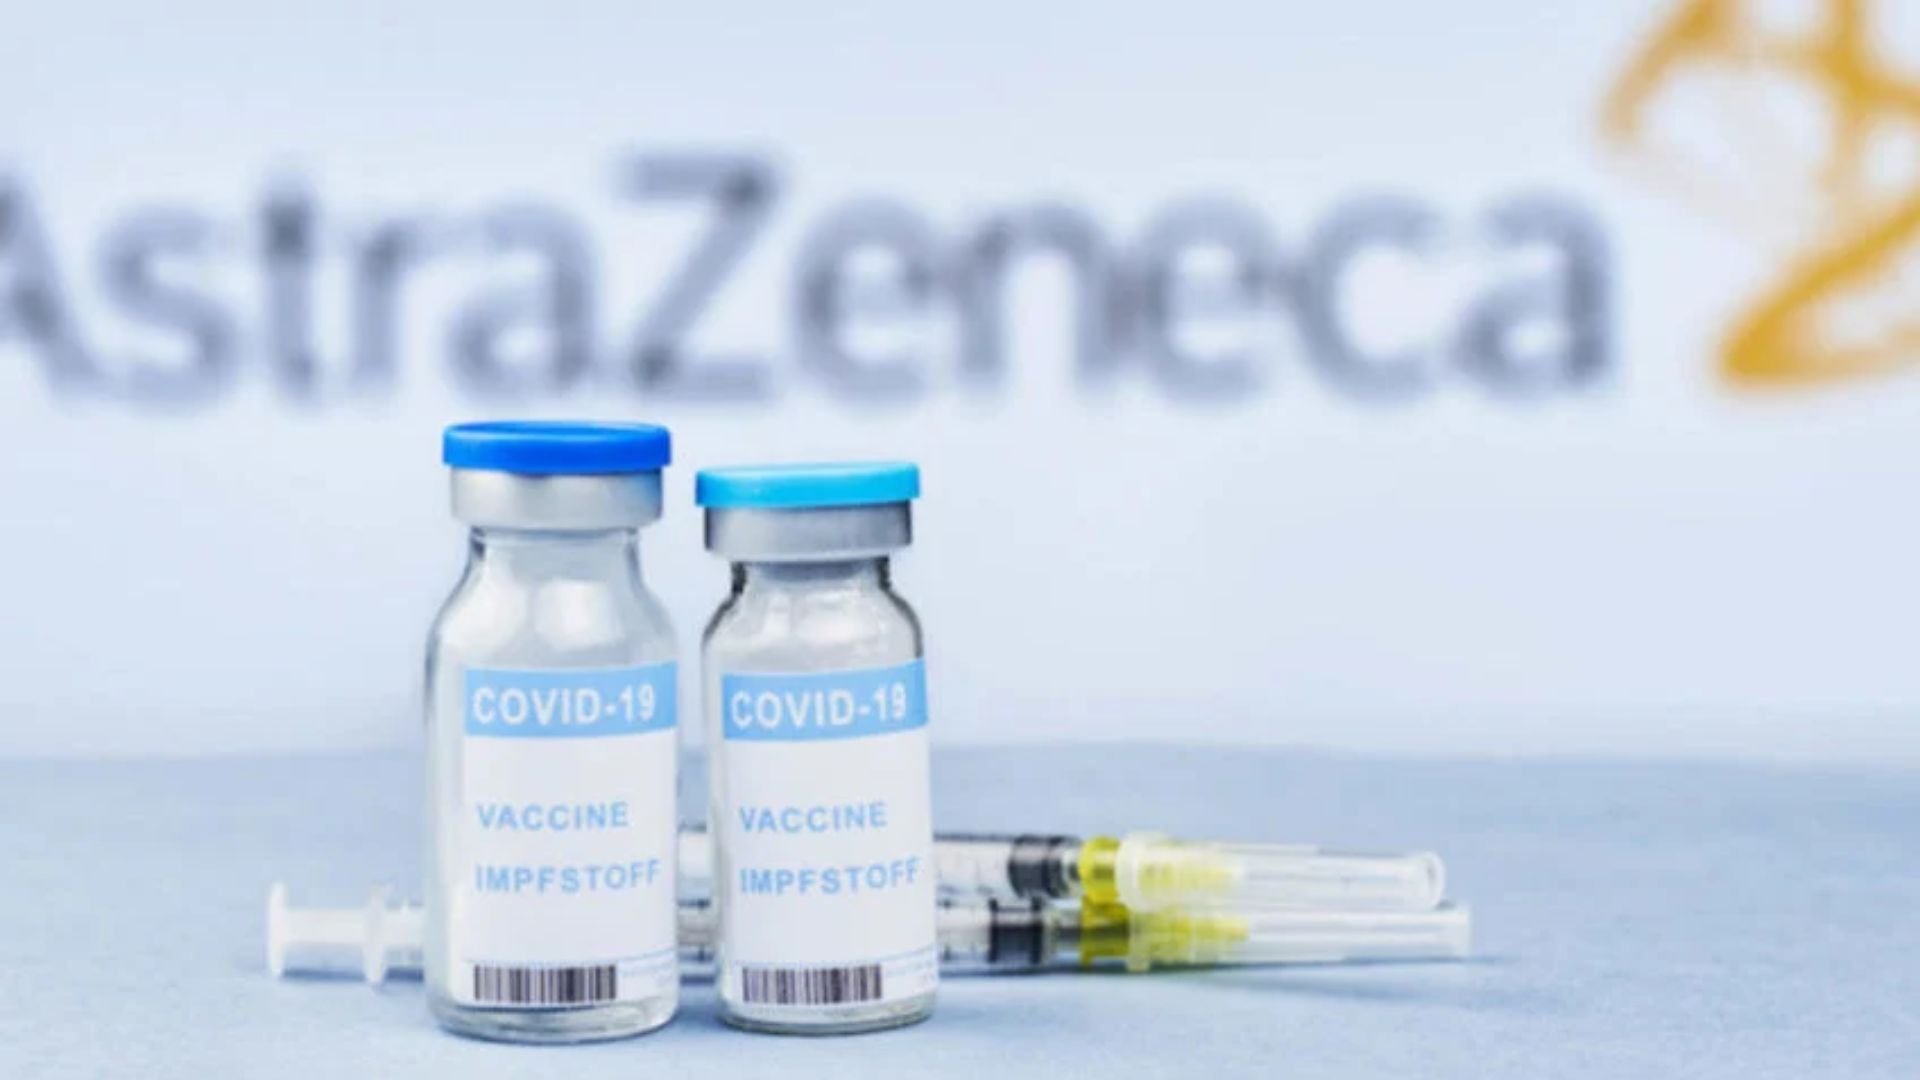 Imunizante da farmacêutica britânica AstraZeneca. Foto: Reprodução